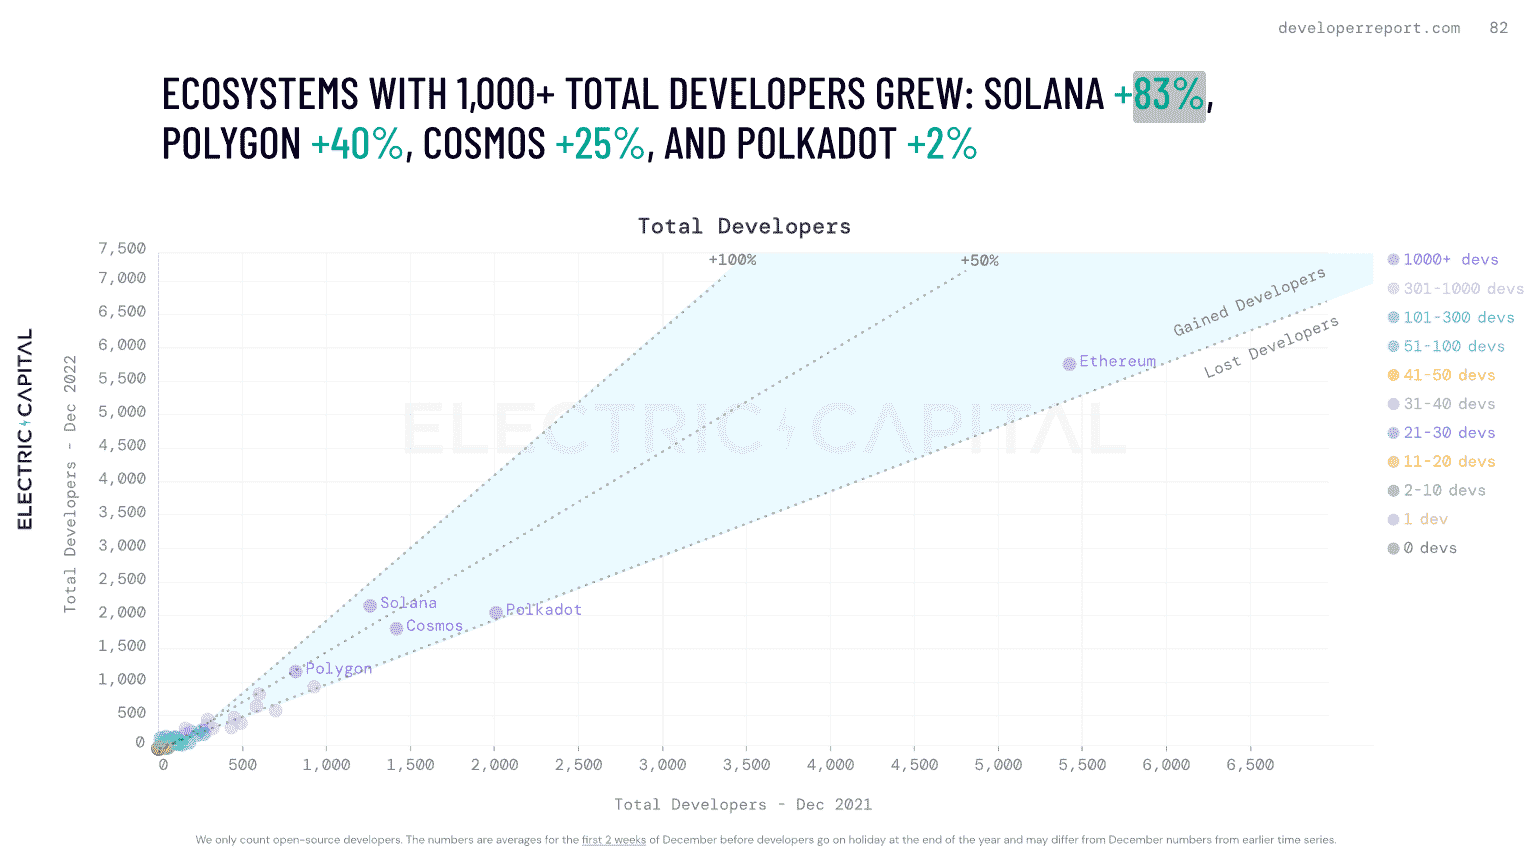 2022'de Solana, Polygon, Cosmos ve Polygon gibi blok zincirlerindeki geliştiricilerin büyümesini gösteren bir grafik